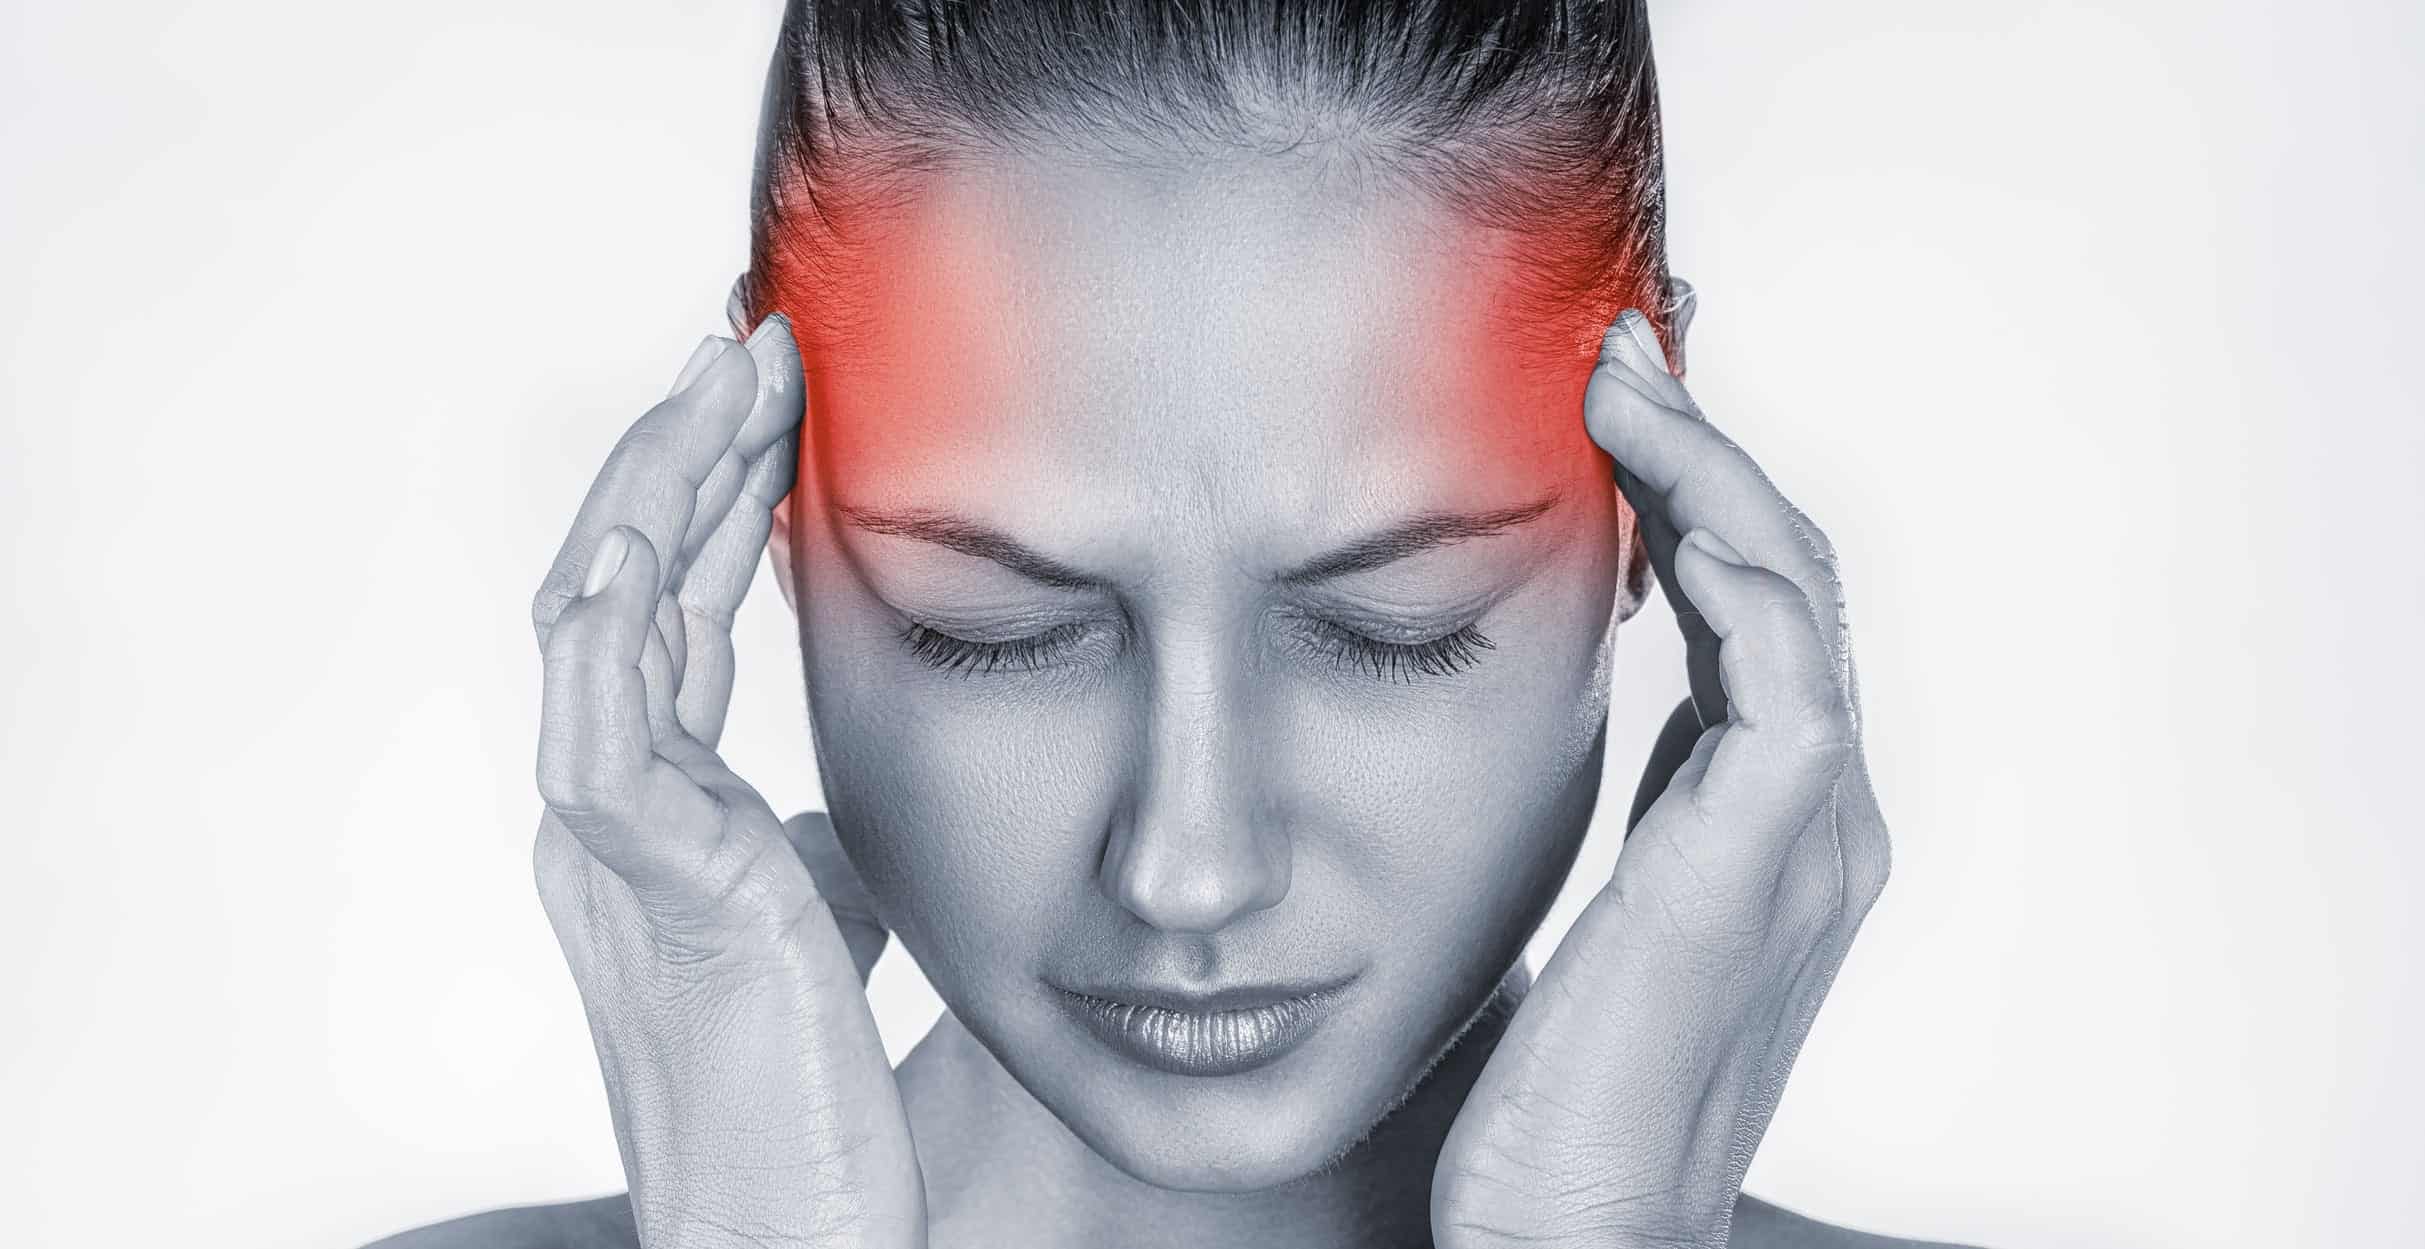 Migrena - czym jest i jak z nią walczyć?